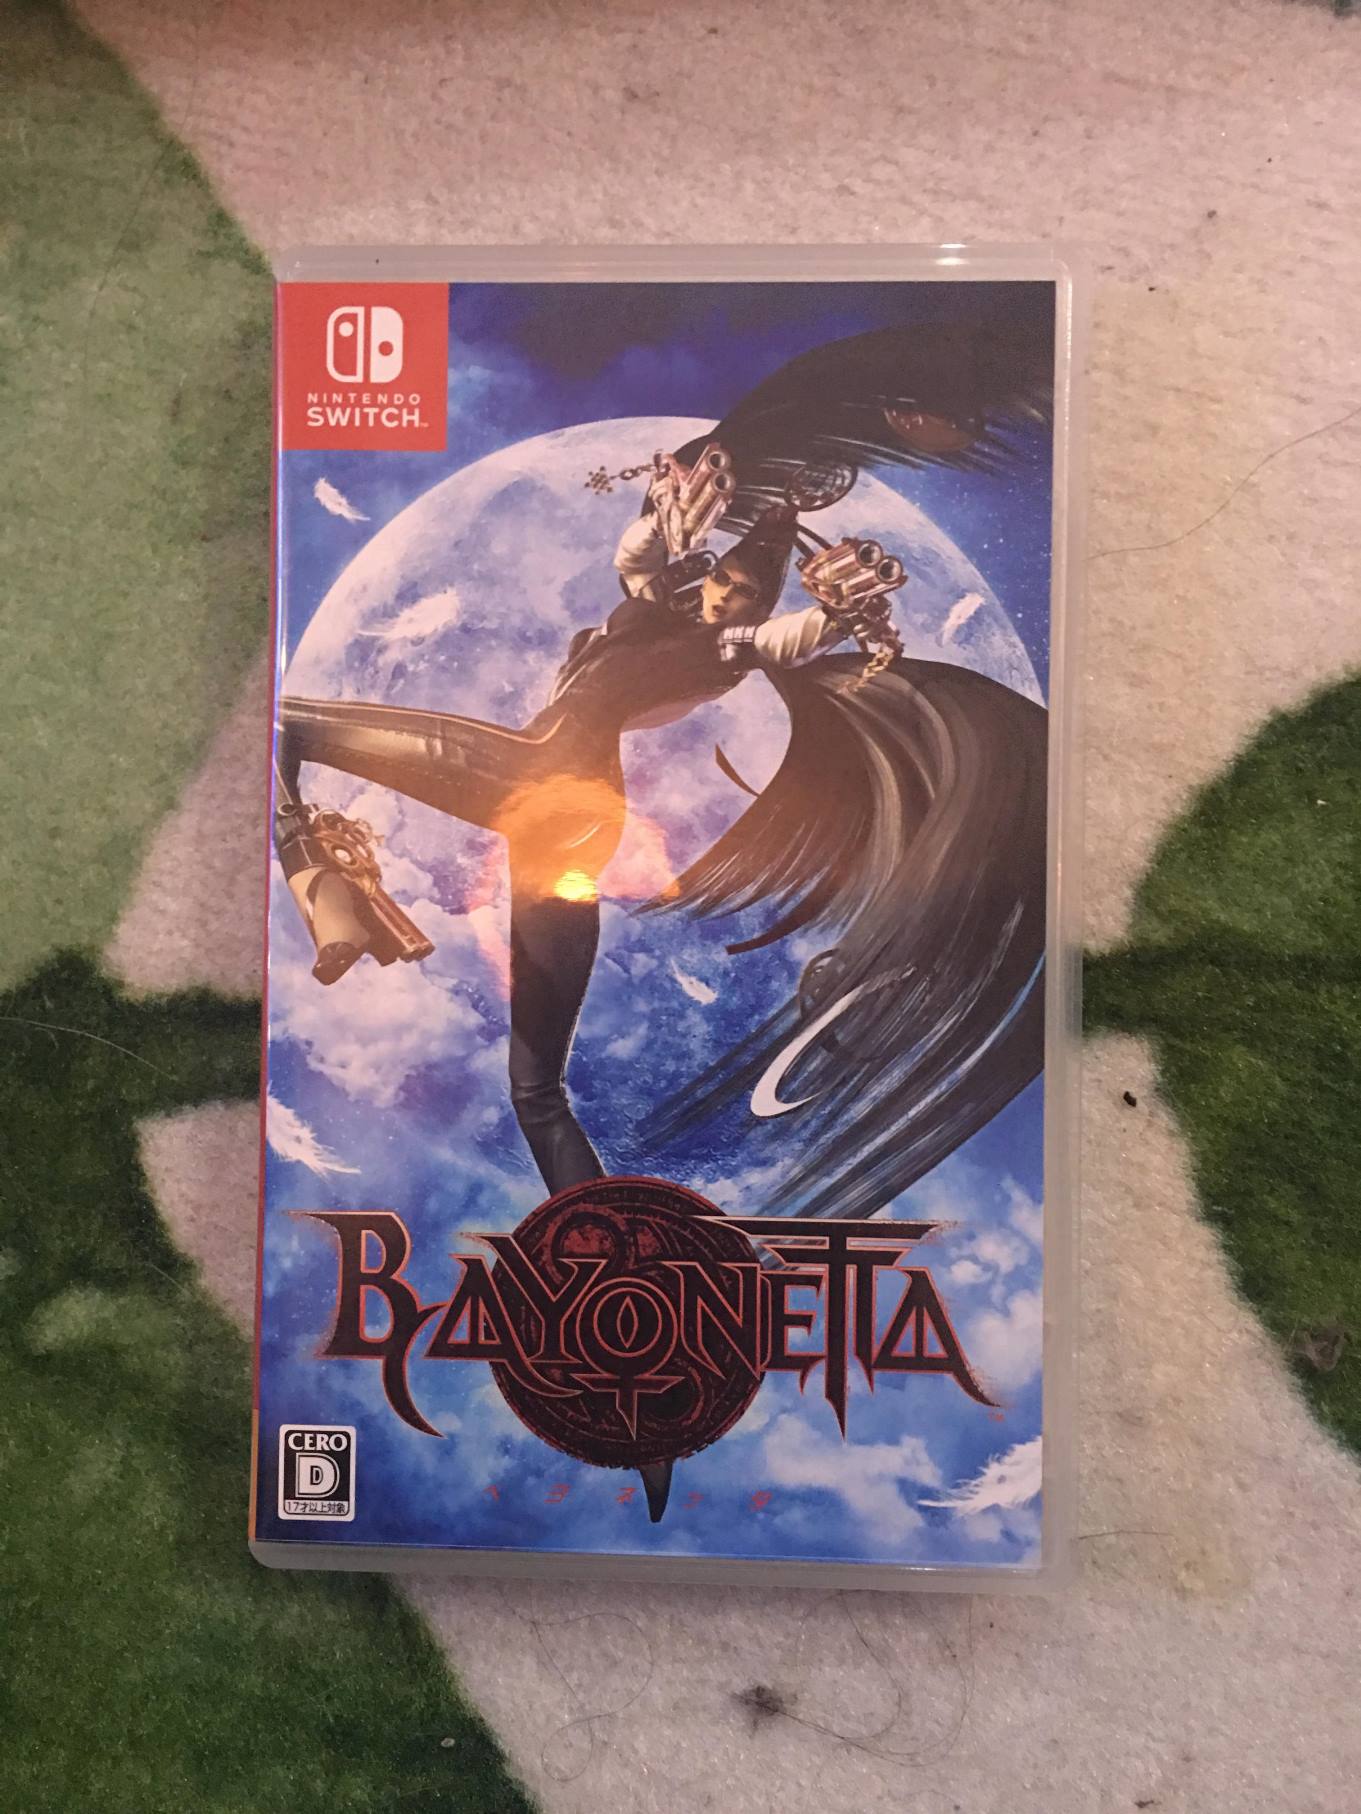 download bayonetta special edition